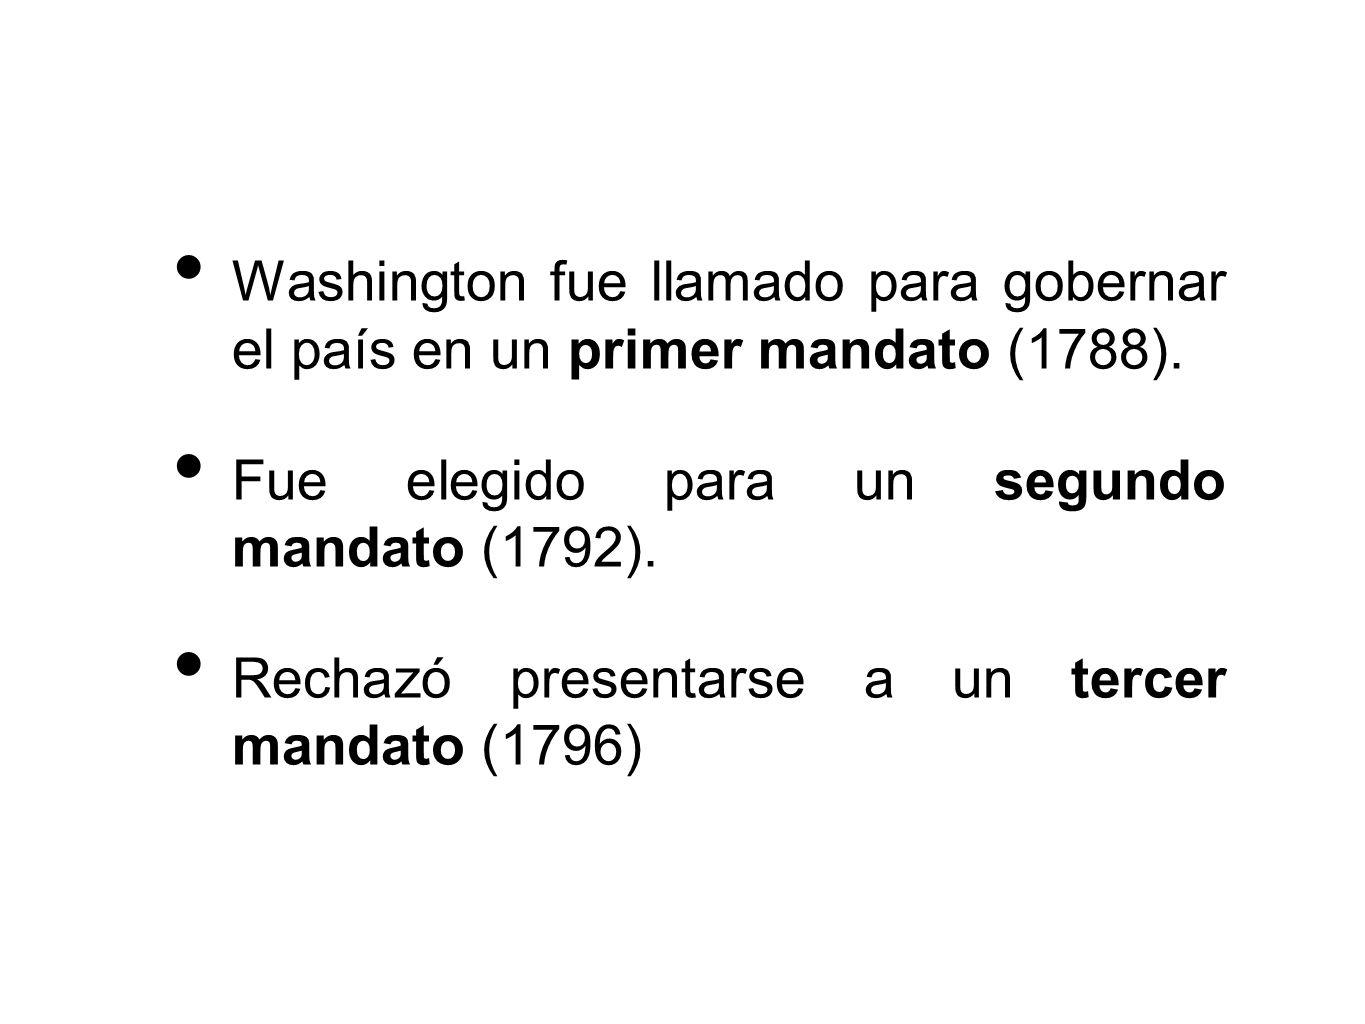 Washington fue llamado para gobernar el país en un primer mandato (1788).